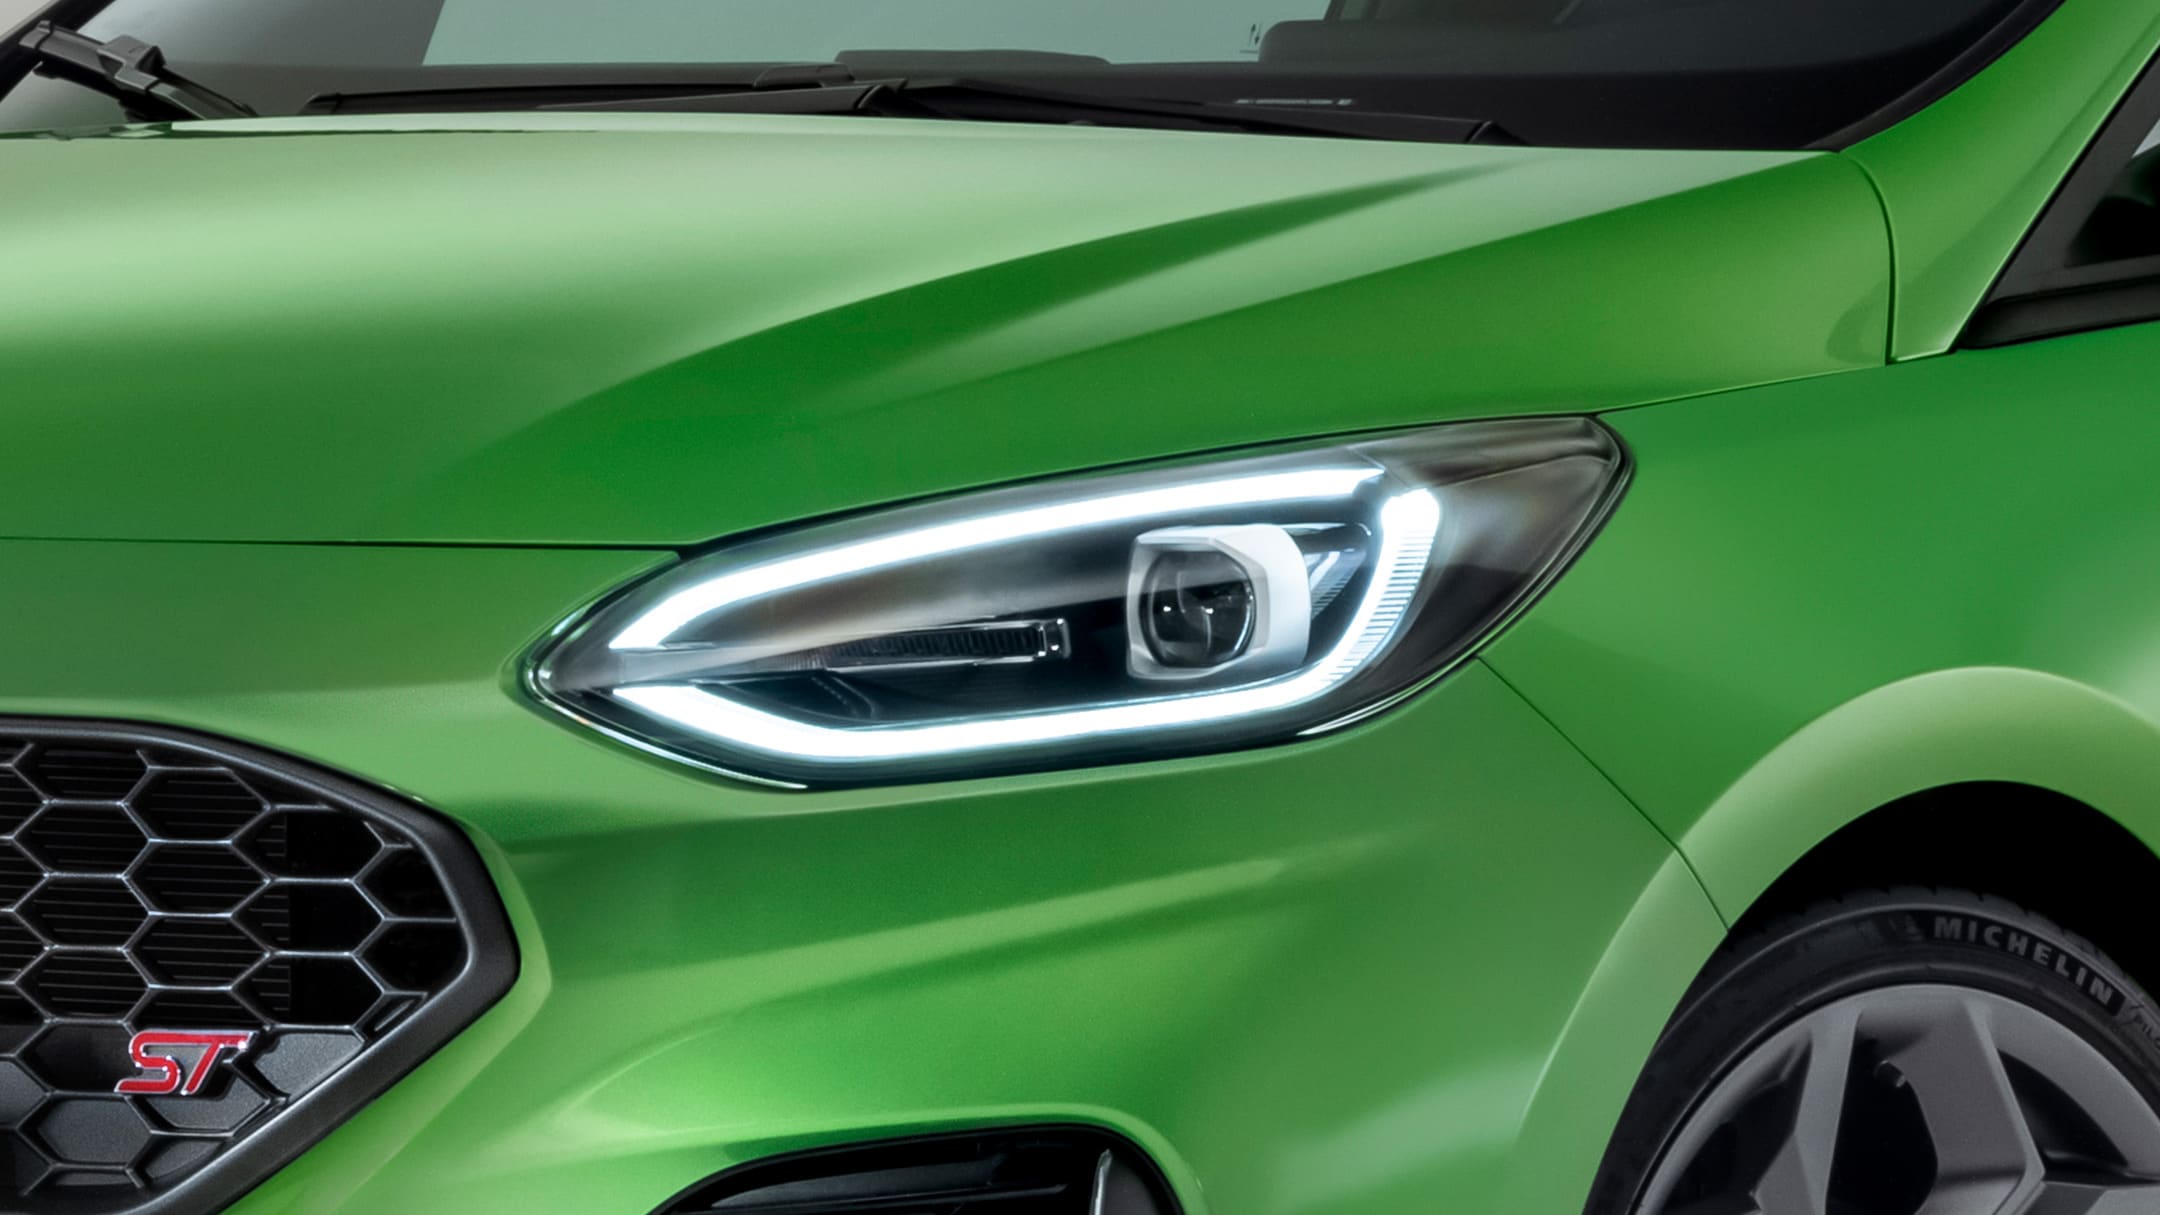 Ford Fiesta ST couleur verte. Vue détaillée d’un phare avant.